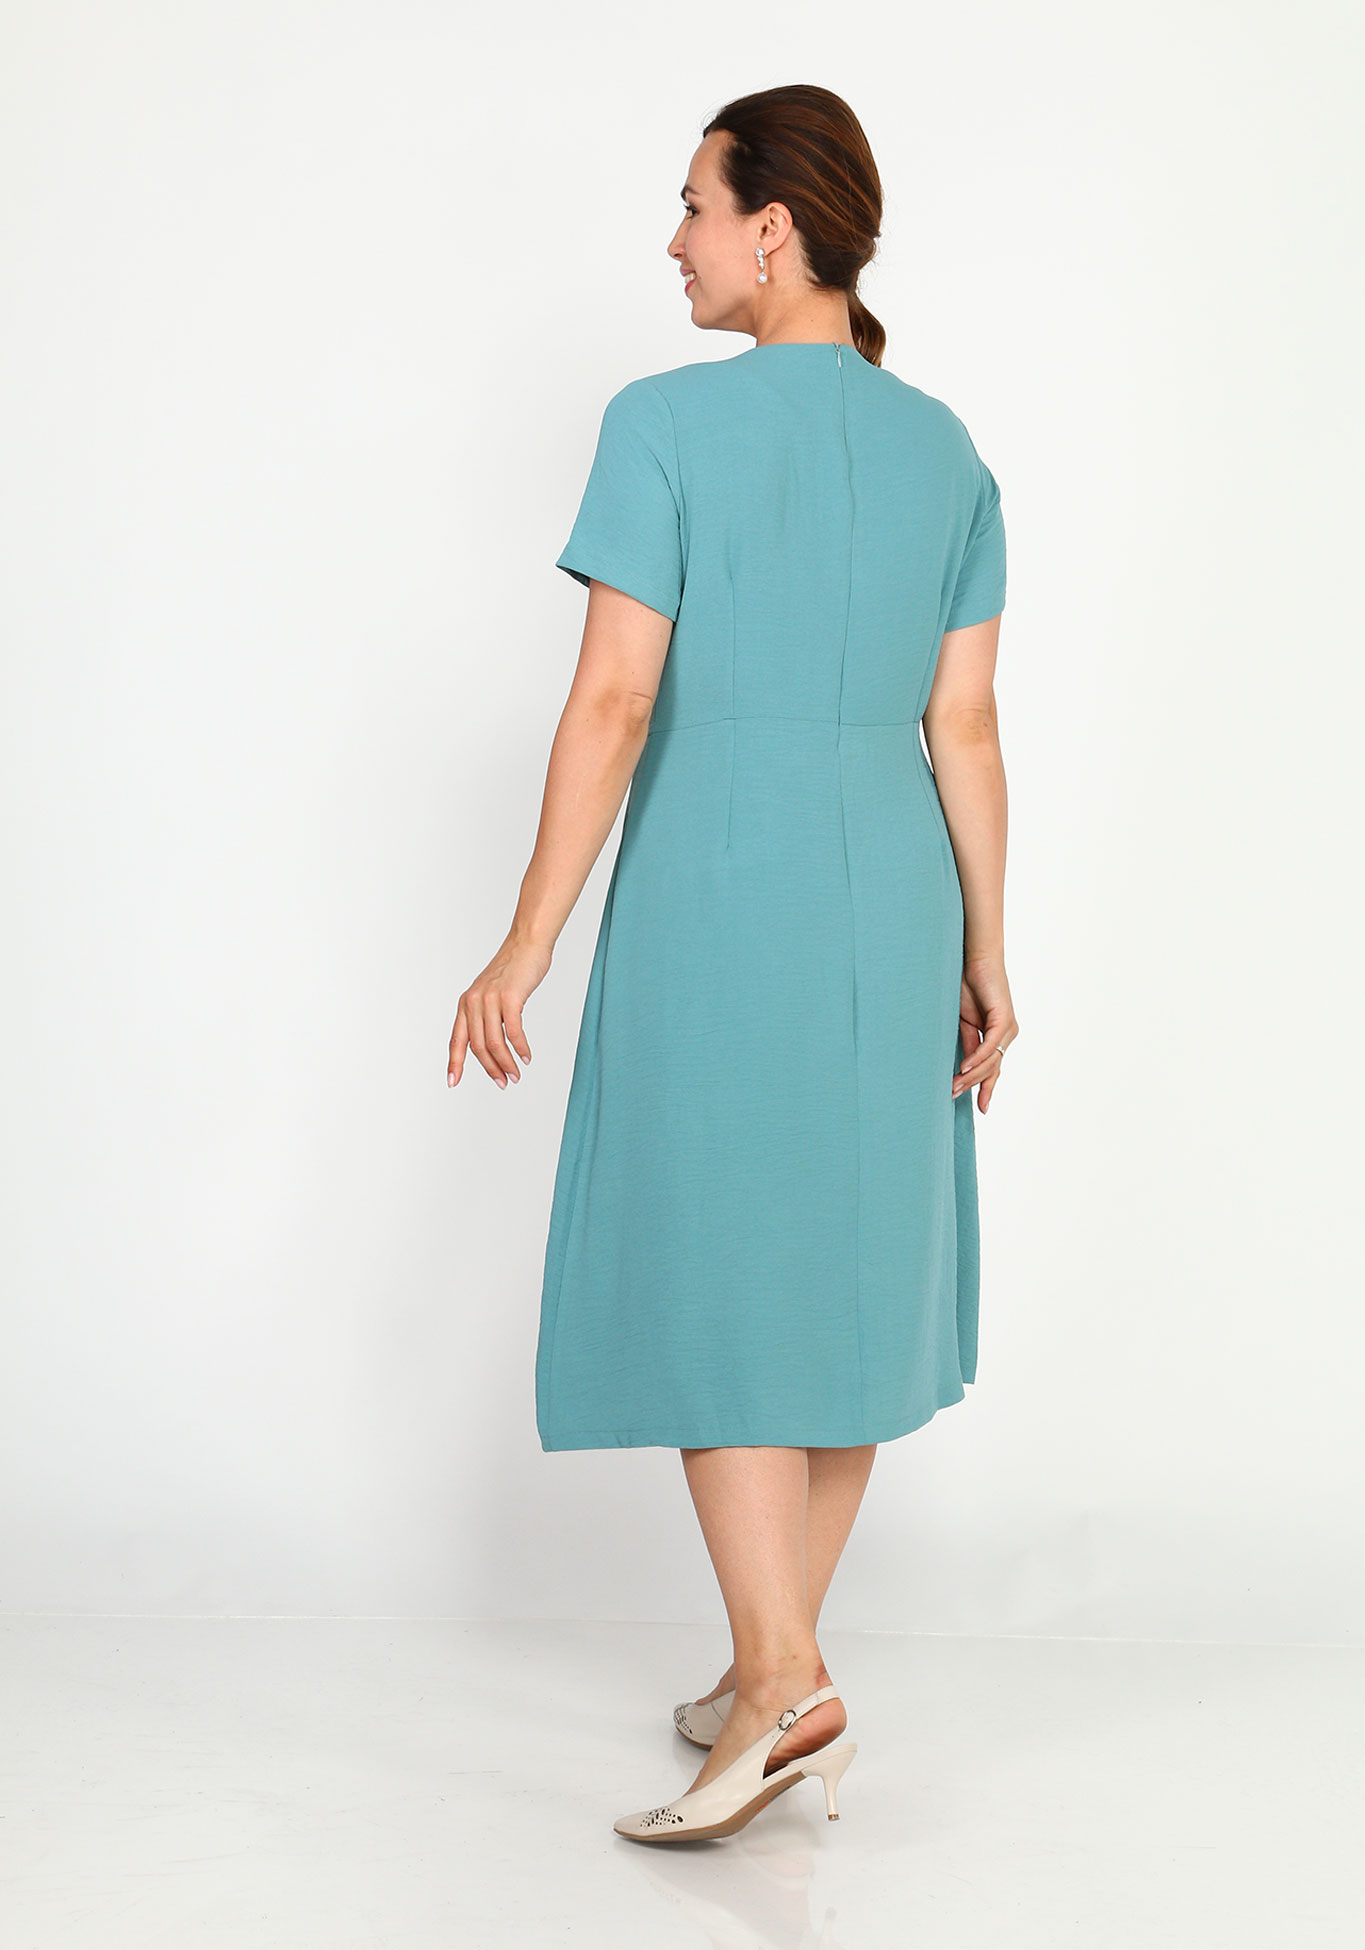 Платье с круглым вырезом и расклешенной юбкой Simple Story, размер 44, цвет голубой - фото 3